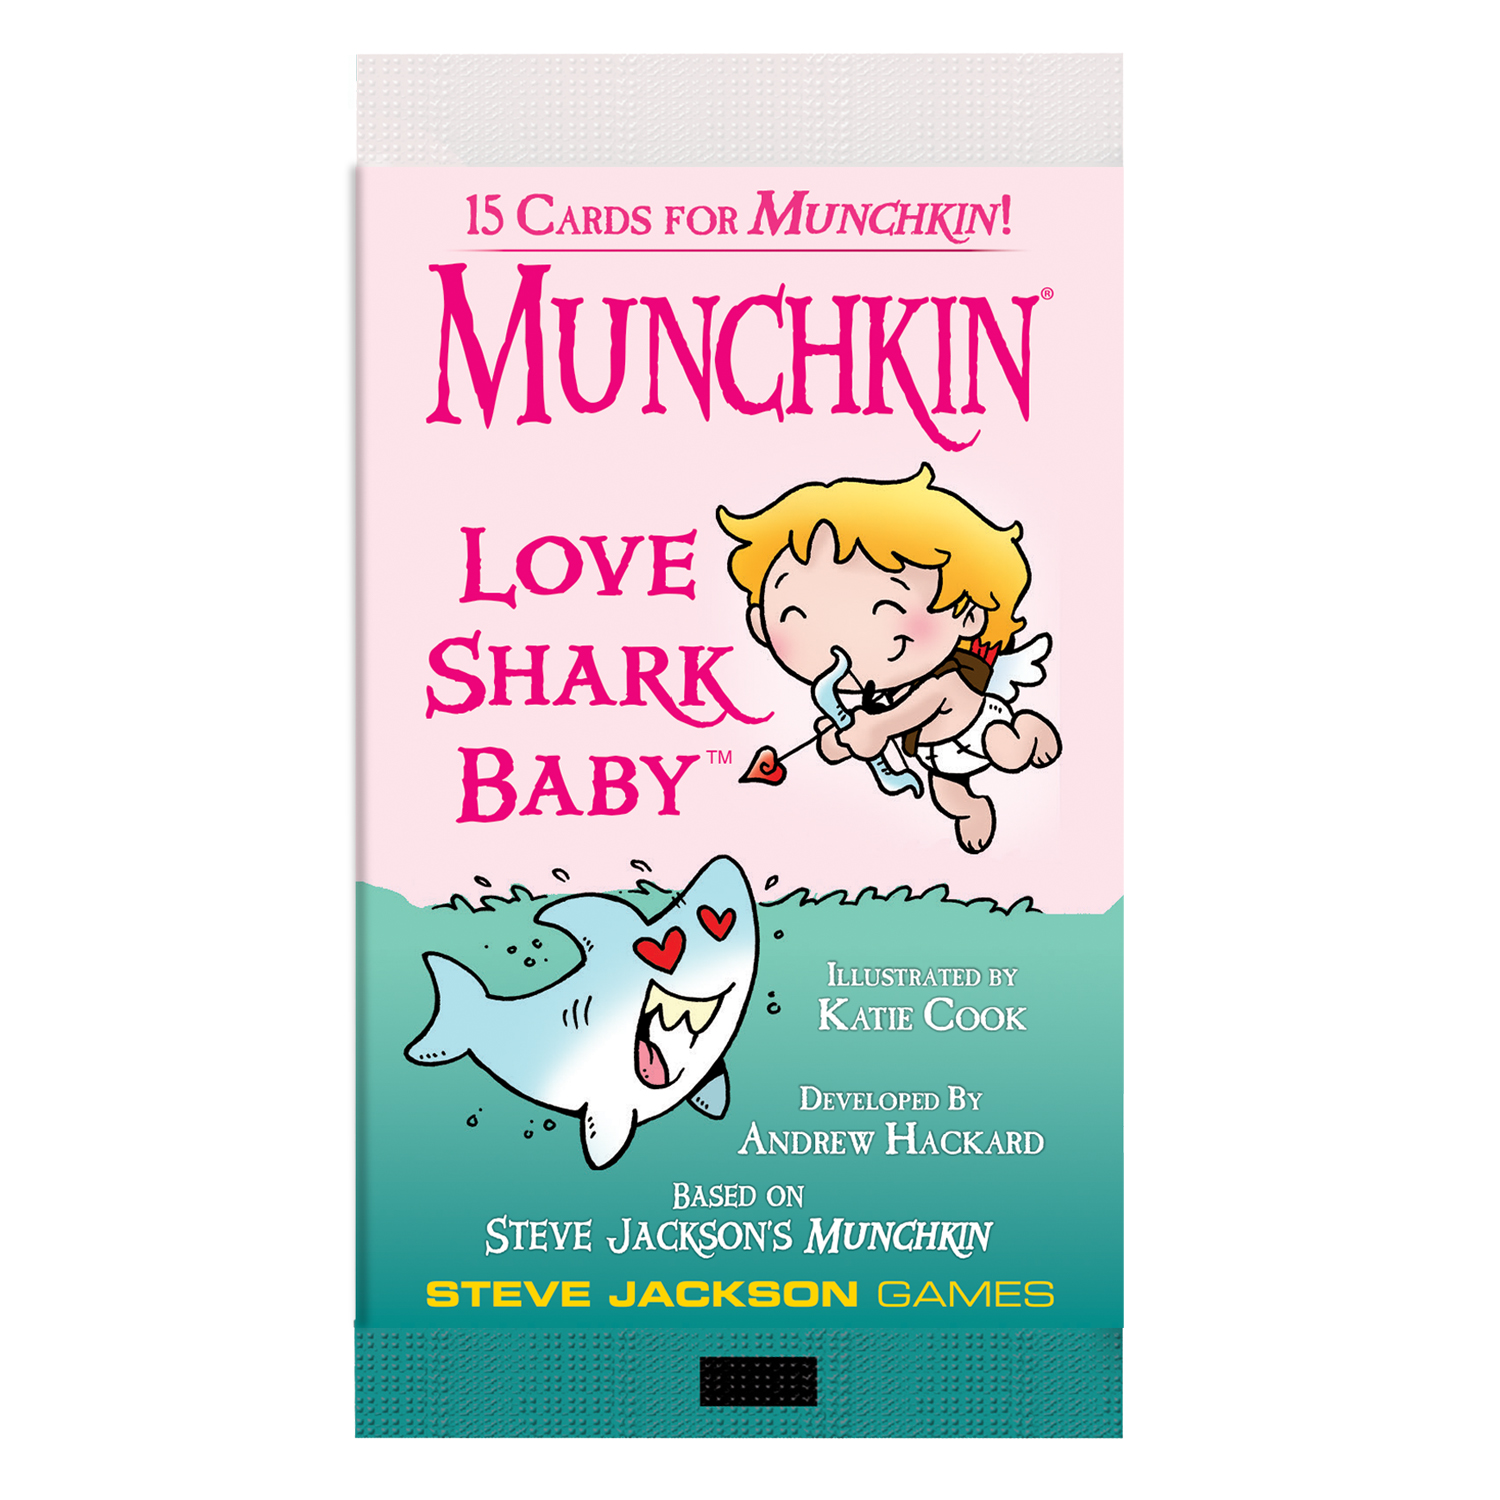 Munchkin Love Shark Baby Brand New & Unopened 1st Printing - Steve Jackson 